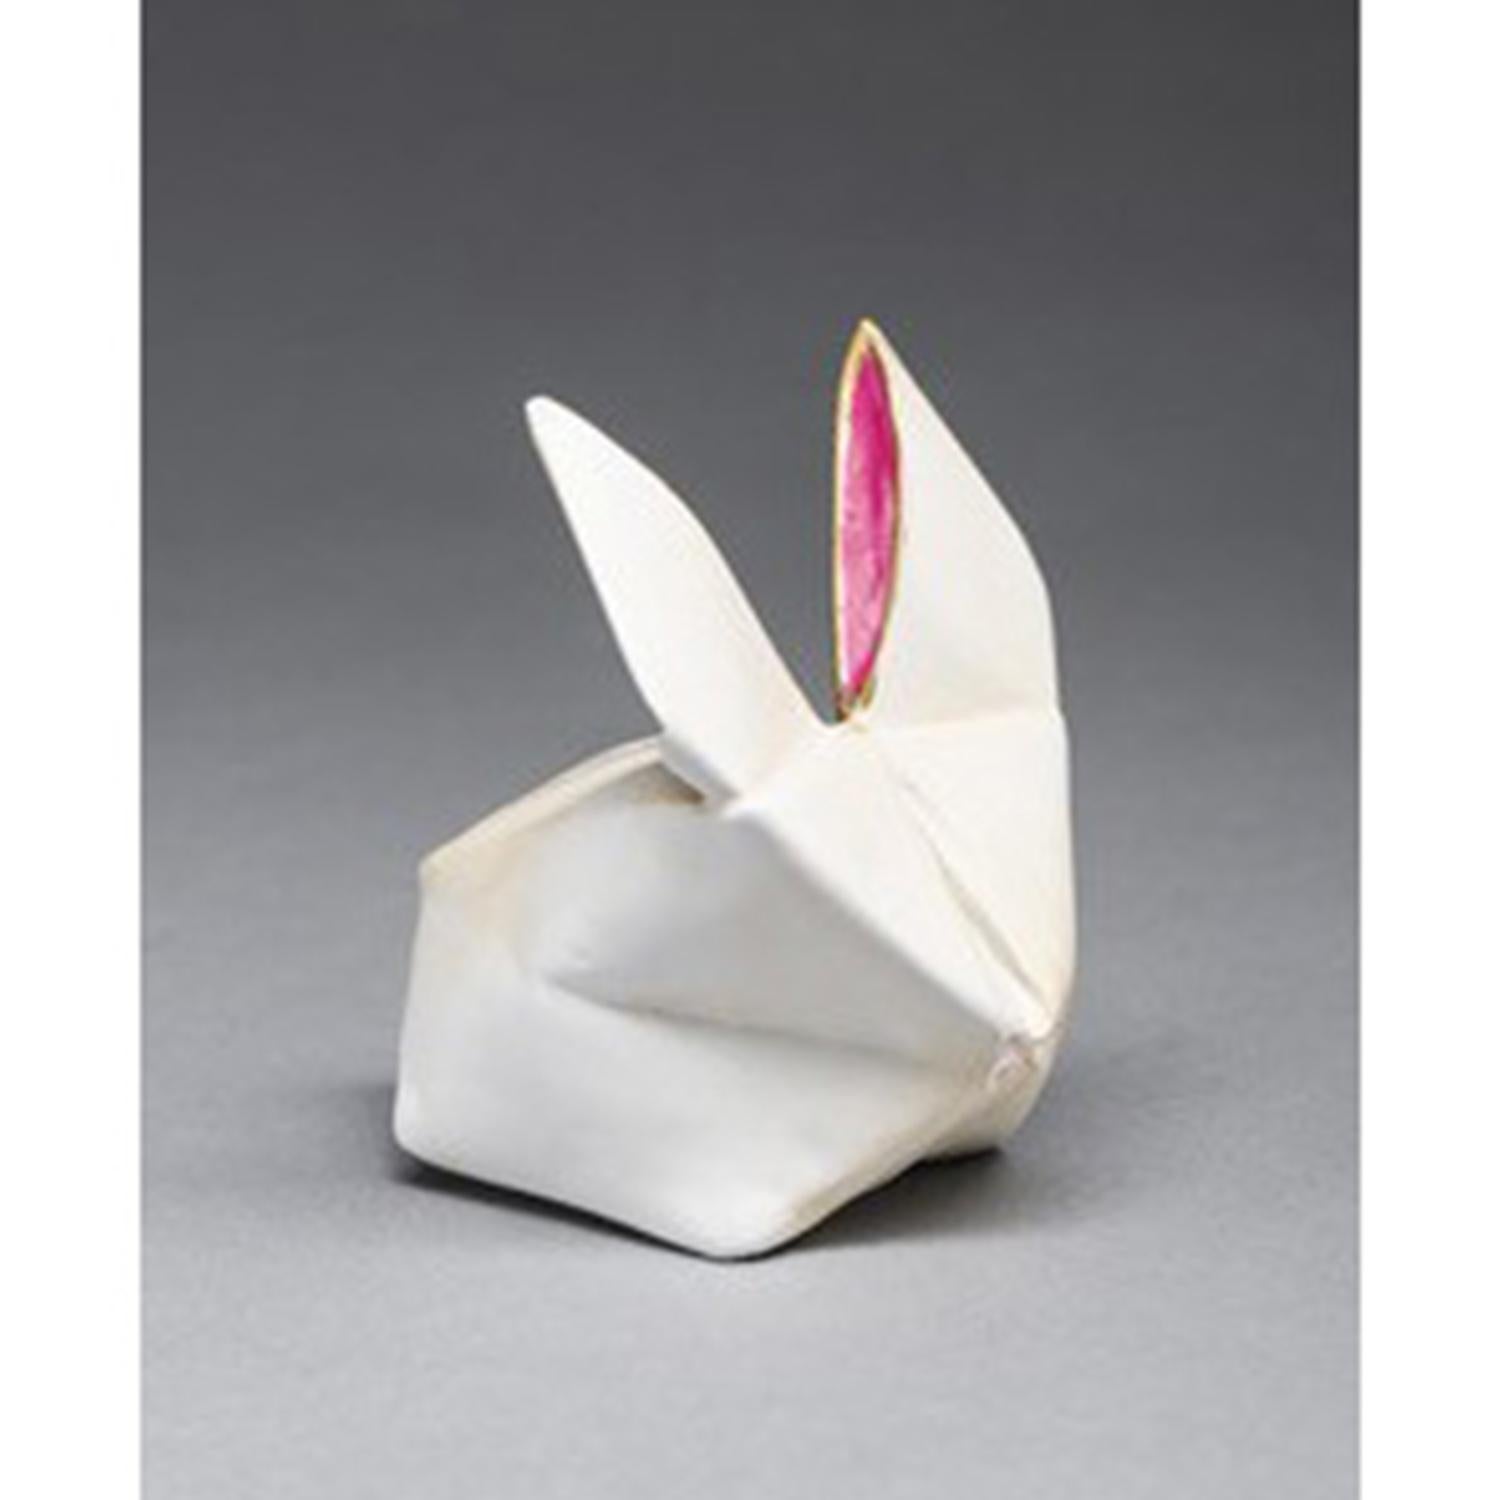 Kevin Box Figurative Sculpture - White Rabbit 3D AP